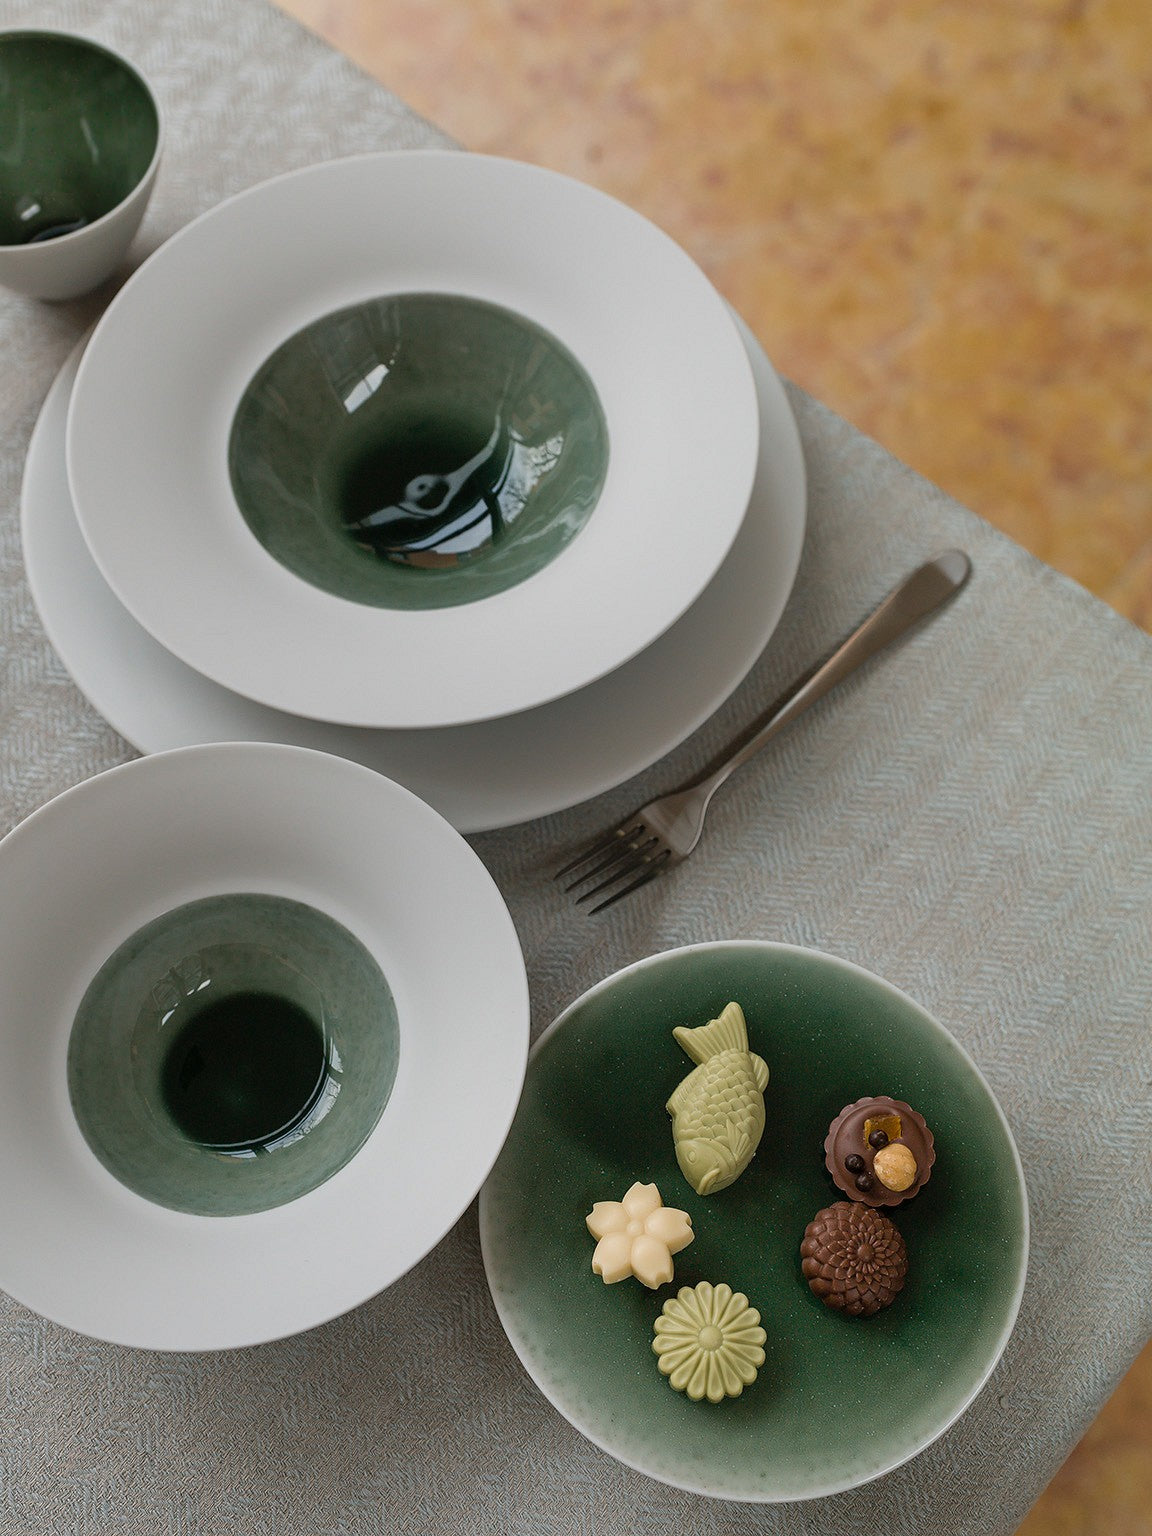 Ein Set Keramikgeschirr auf einem Tisch, bestehend aus zwei Tellern und zwei Schalen mit grüner Glasur, dazu eine Gabel und vier kleine Deko-Süßigkeiten auf einem Teller.